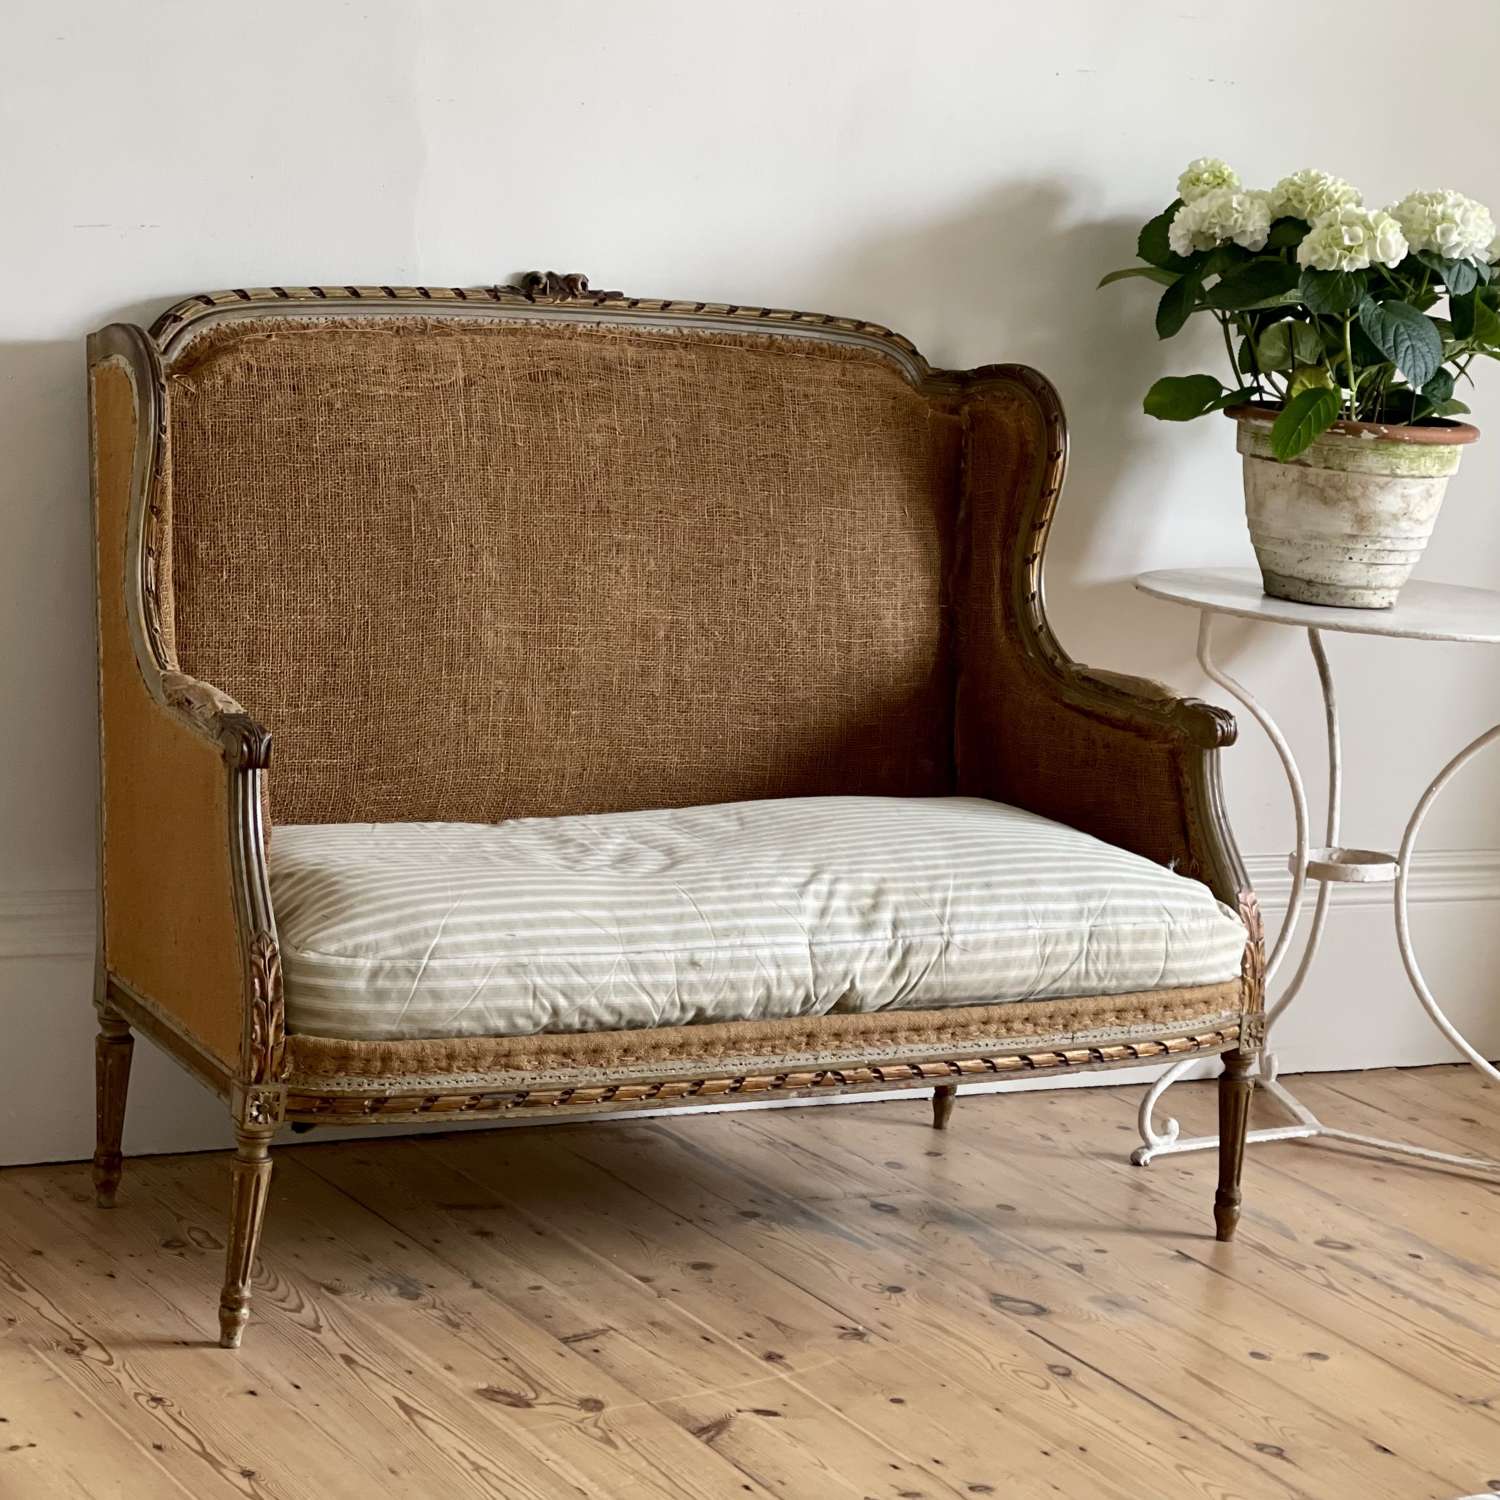 Antique French sofa c1880 - original paint